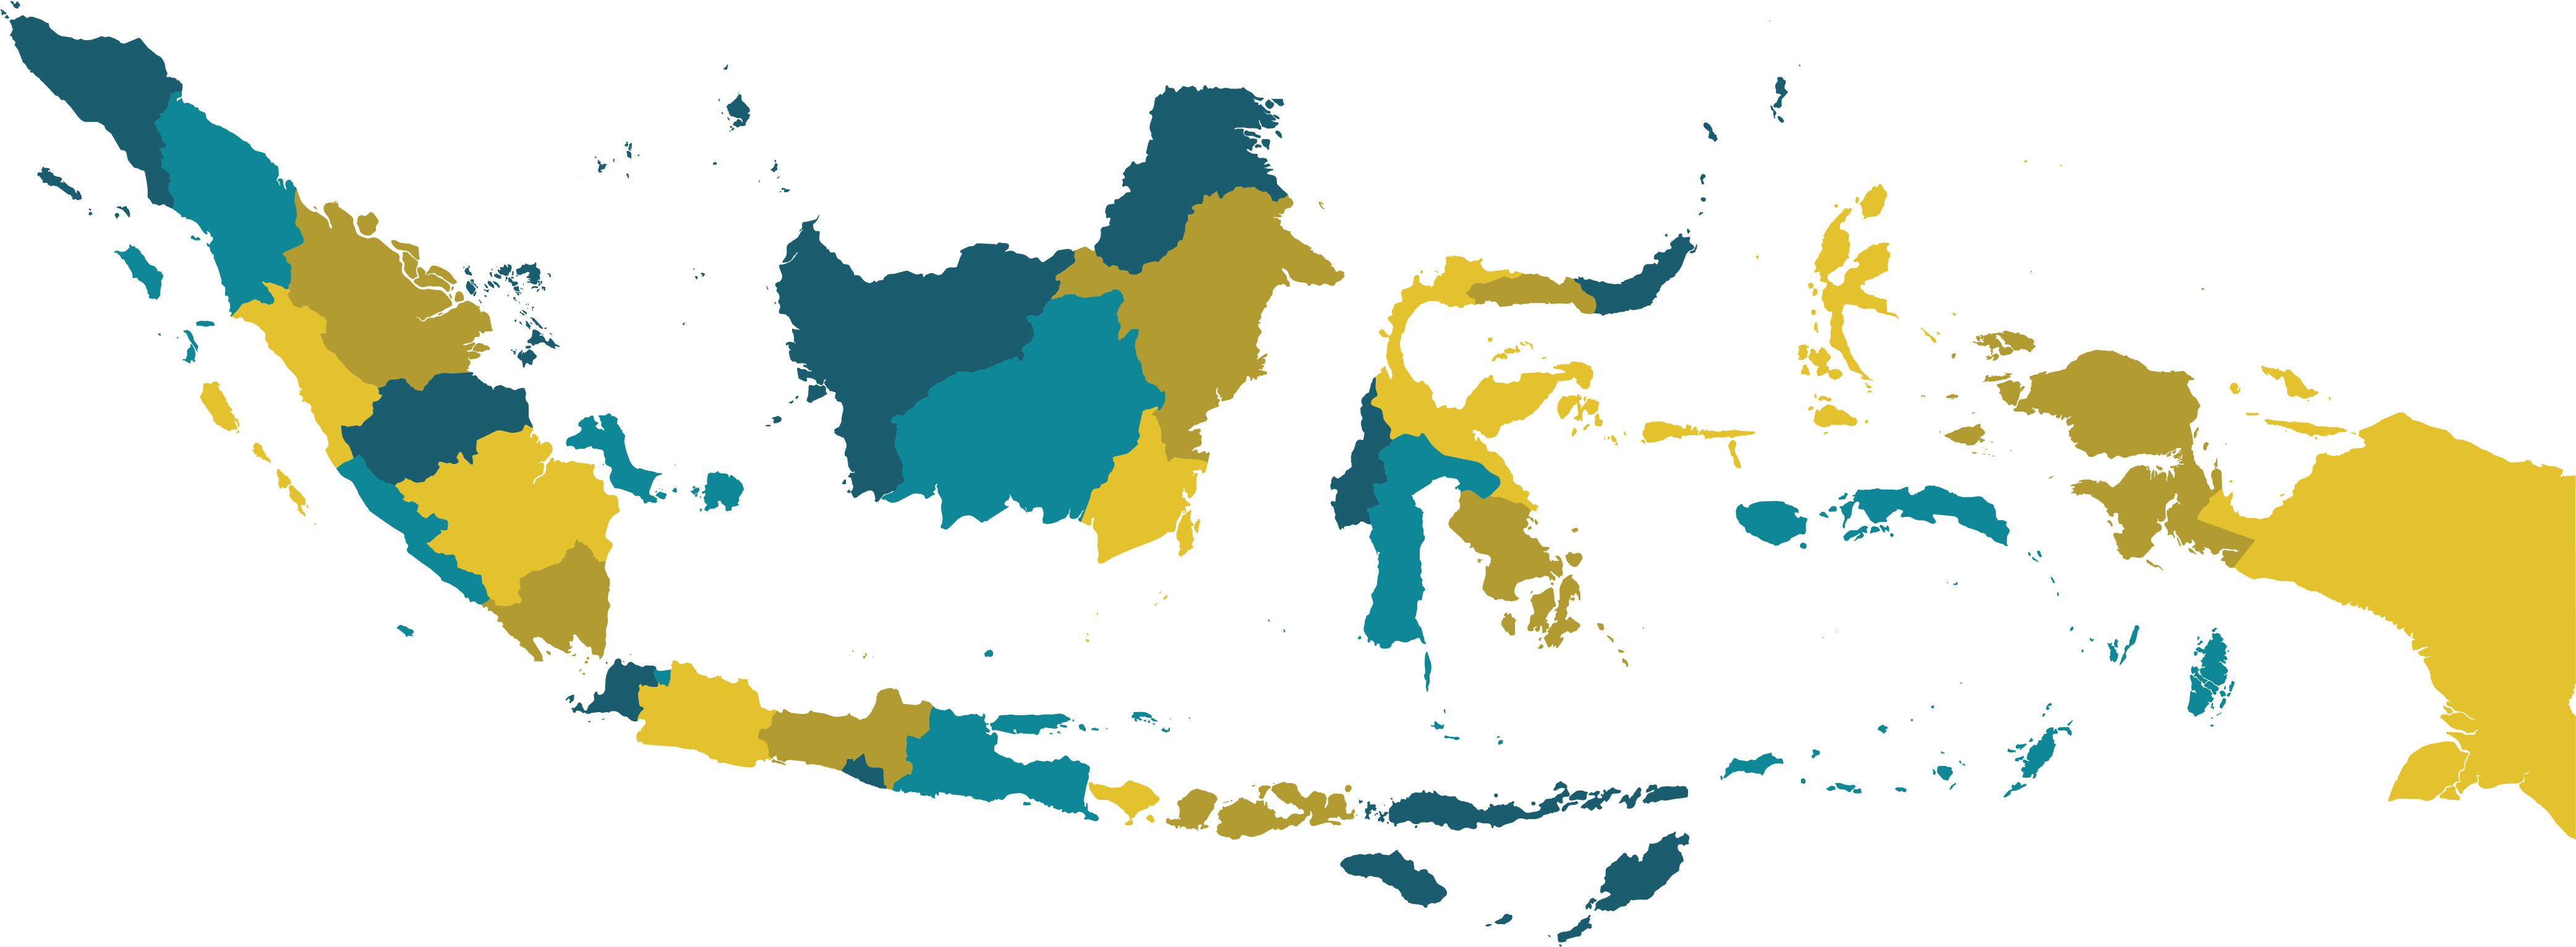 Peta Indonesia Vector - ABAIKAN SAJA: Download Vector Peta Indonesia